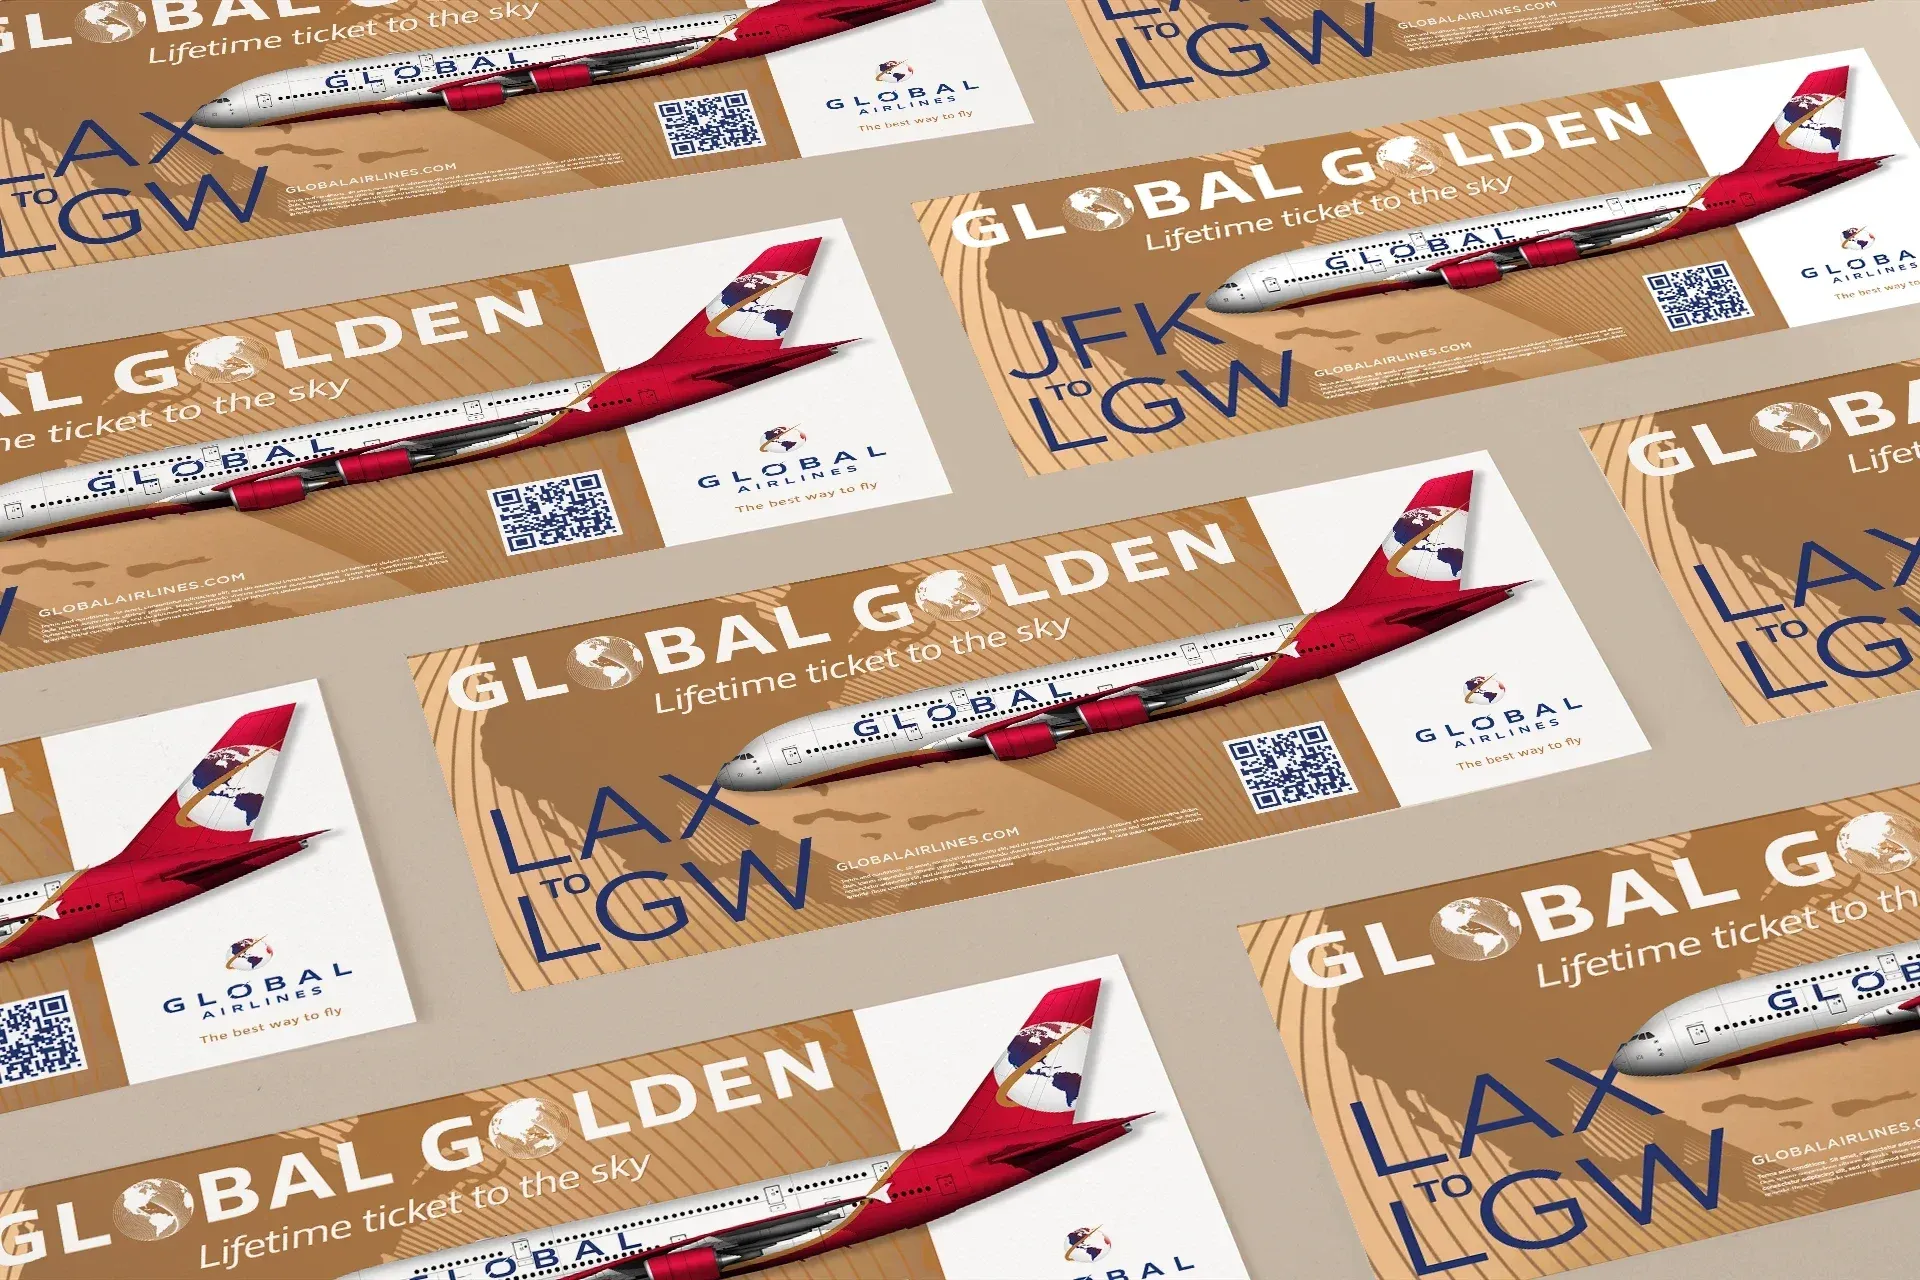 Global Airlines' Golden Ticket